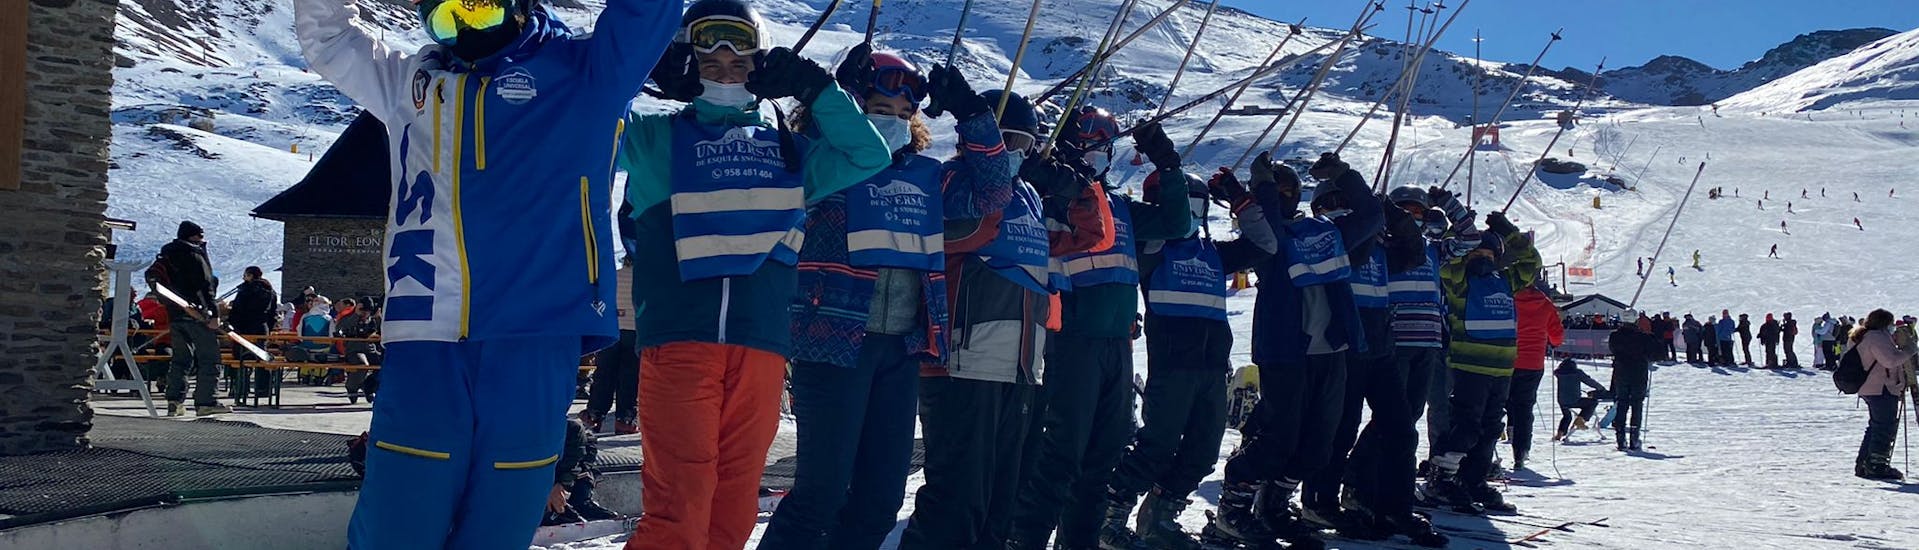 Les élèves apprennent à skier pendant un cours de ski pour débutants avec l'Escuela Universal de Ski Sierra Nevada.